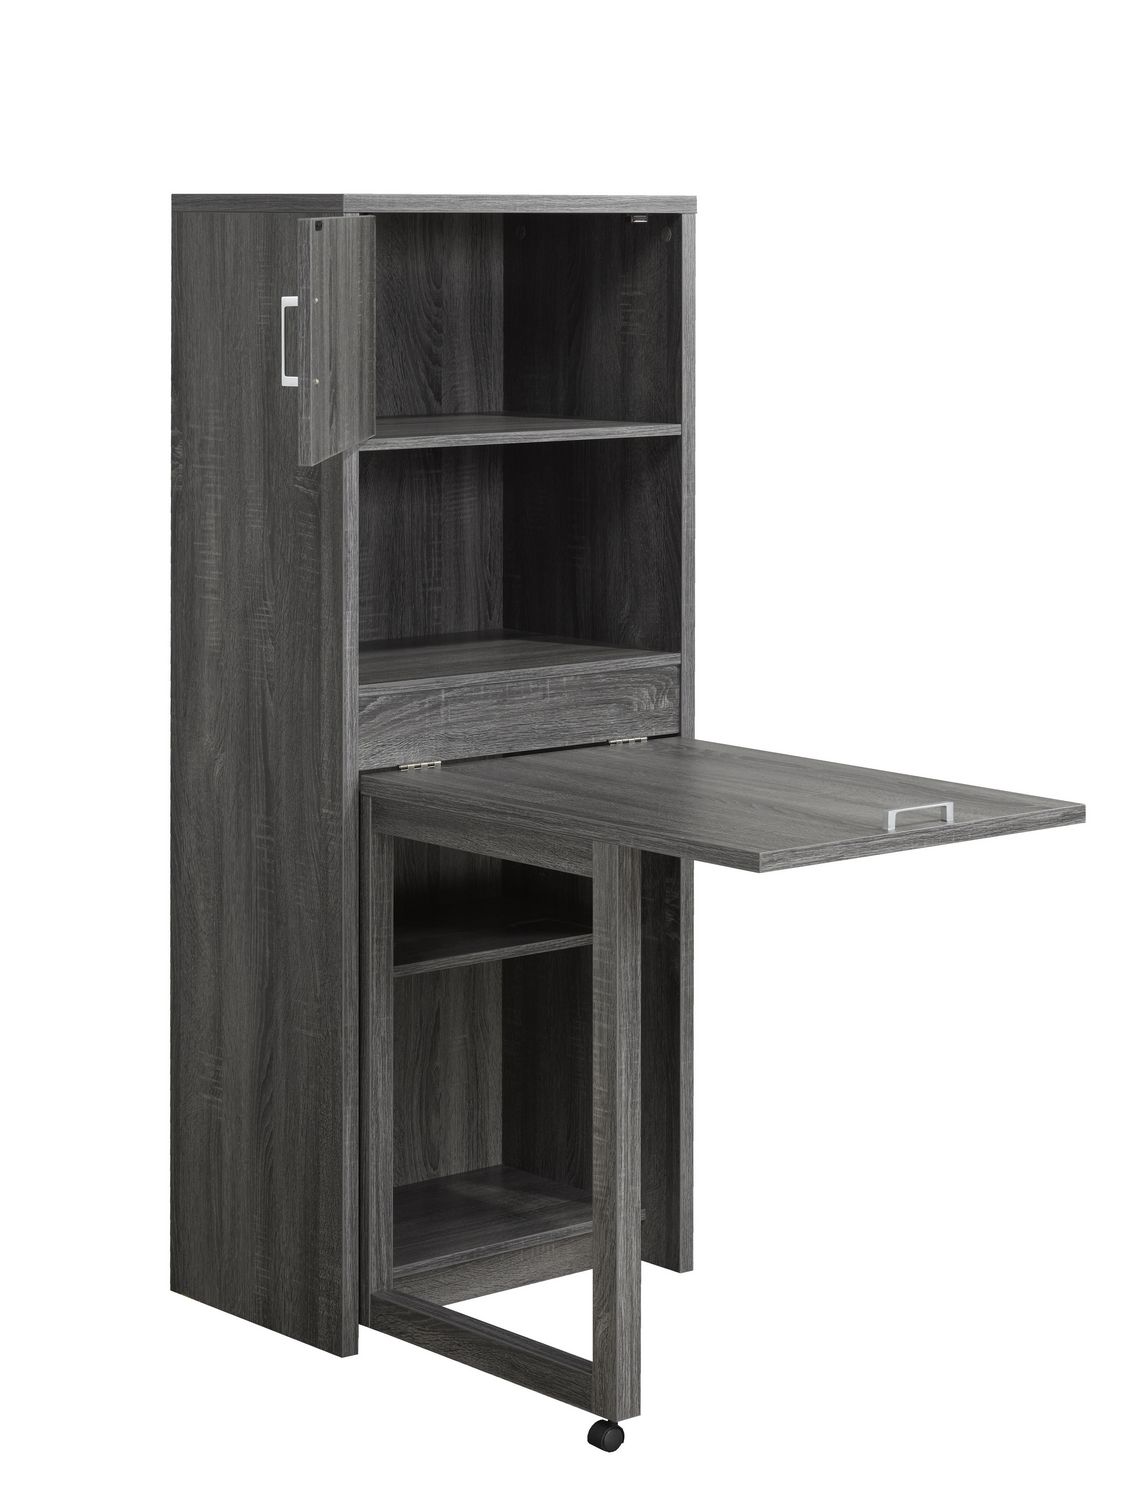 Multi Tier Bookcase With Fold Down Desk, Bookcase With Flip Down Desk